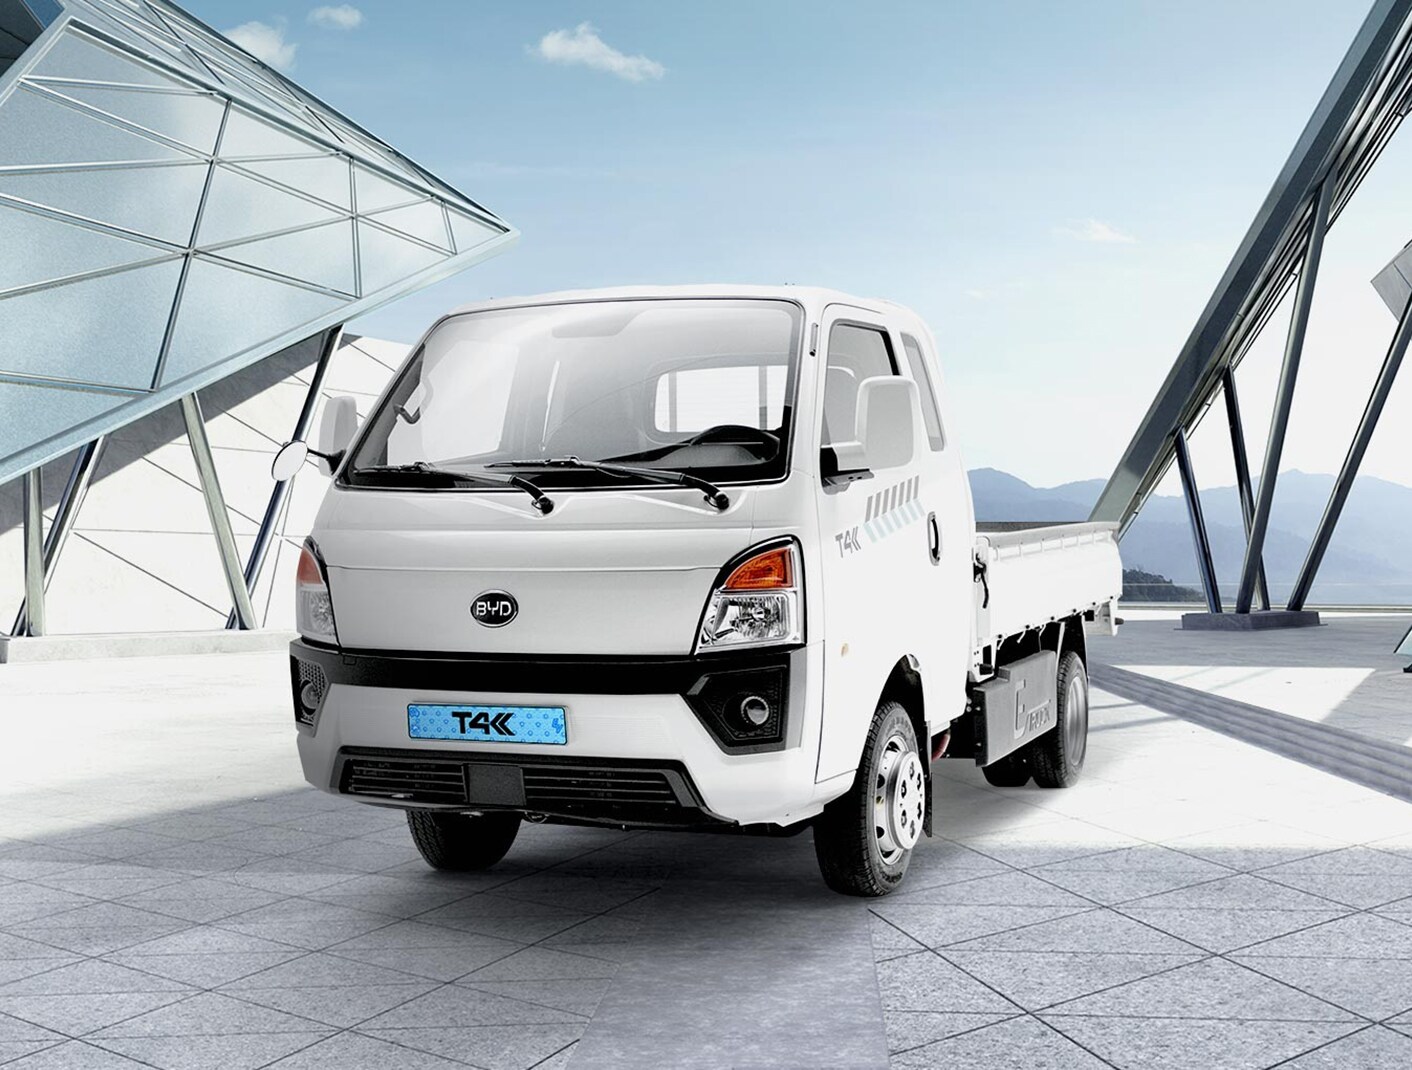 Hankook Tire cung cấp lốp  xe chính hãng cho xe tải điện T4K của BYD